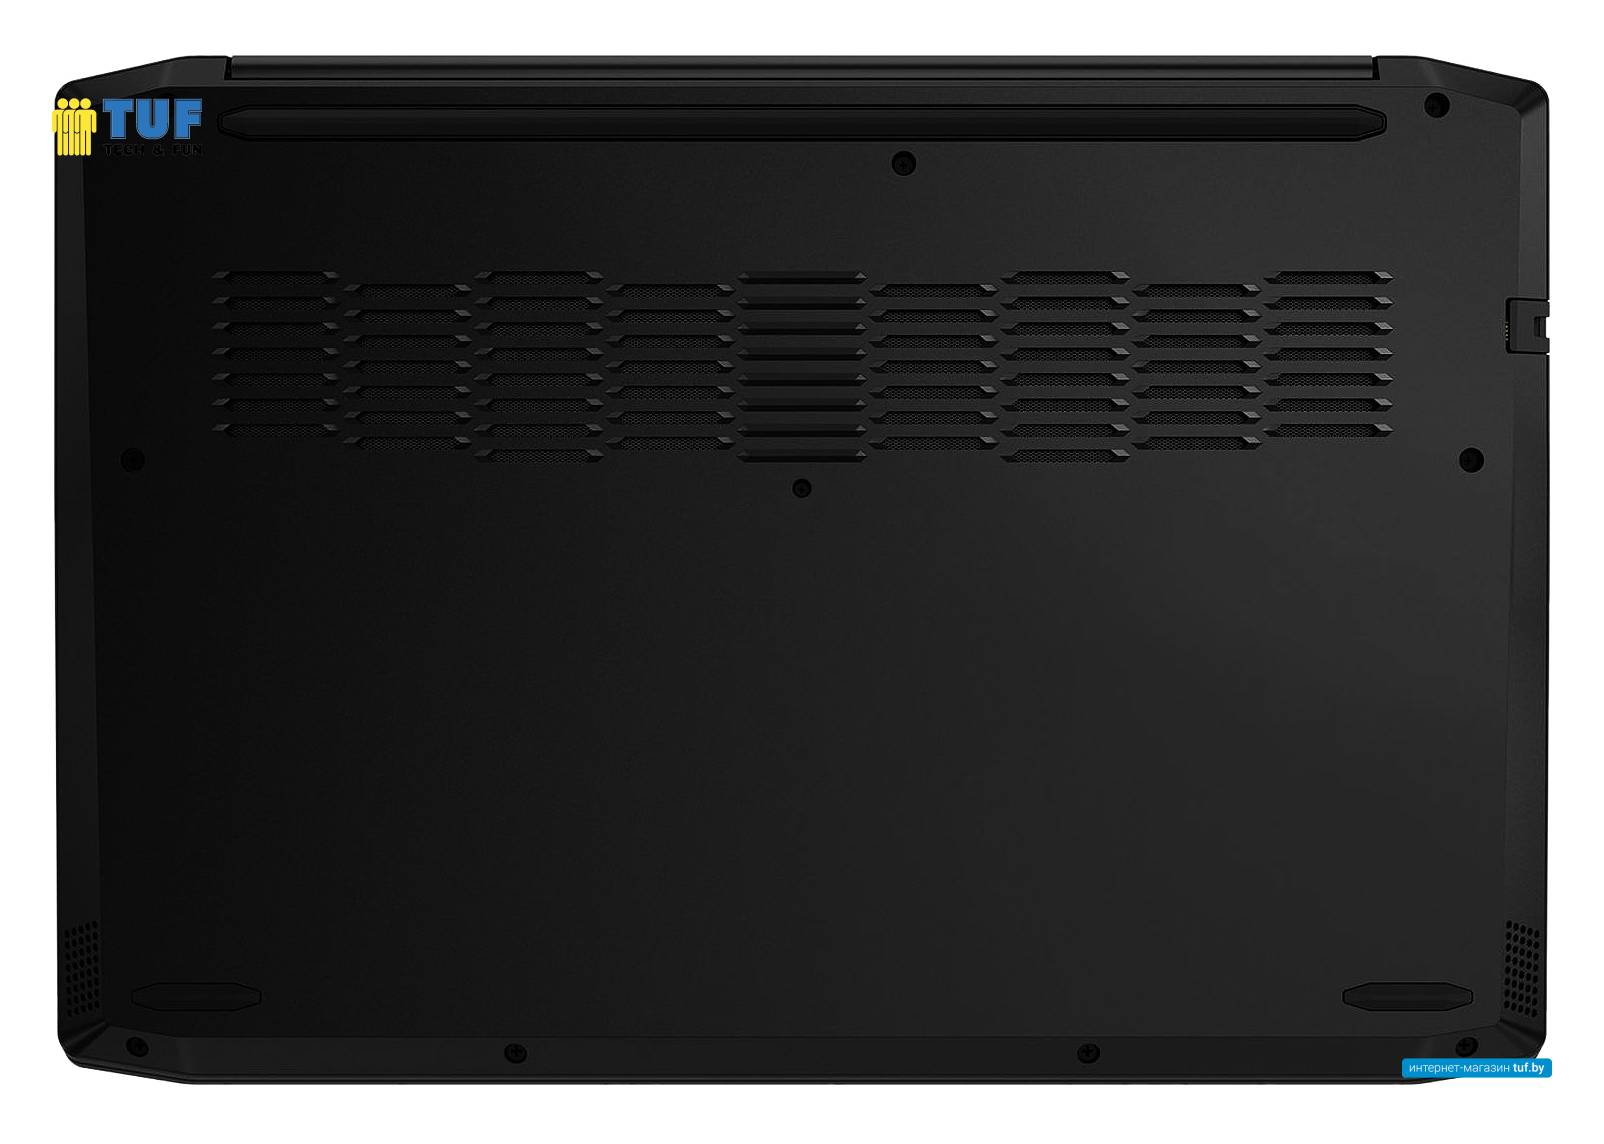 Игровой ноутбук Lenovo IdeaPad Gaming 3 15ARH05 82EY000DRU